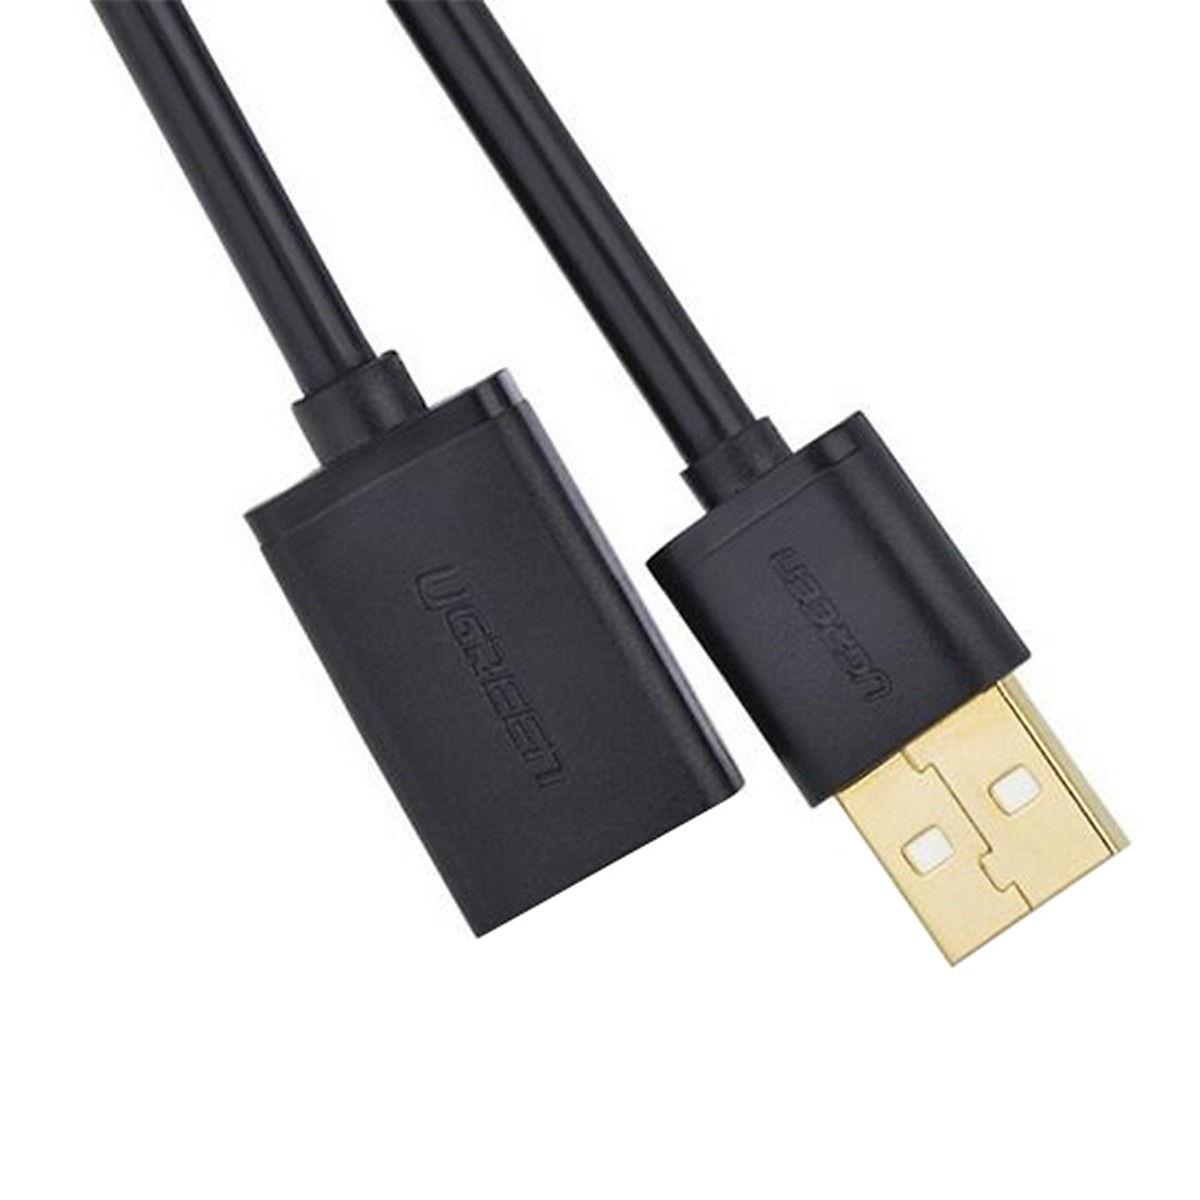 Cáp USB 2.0 nối dài 0,5m chính hãng Ugreen 10313